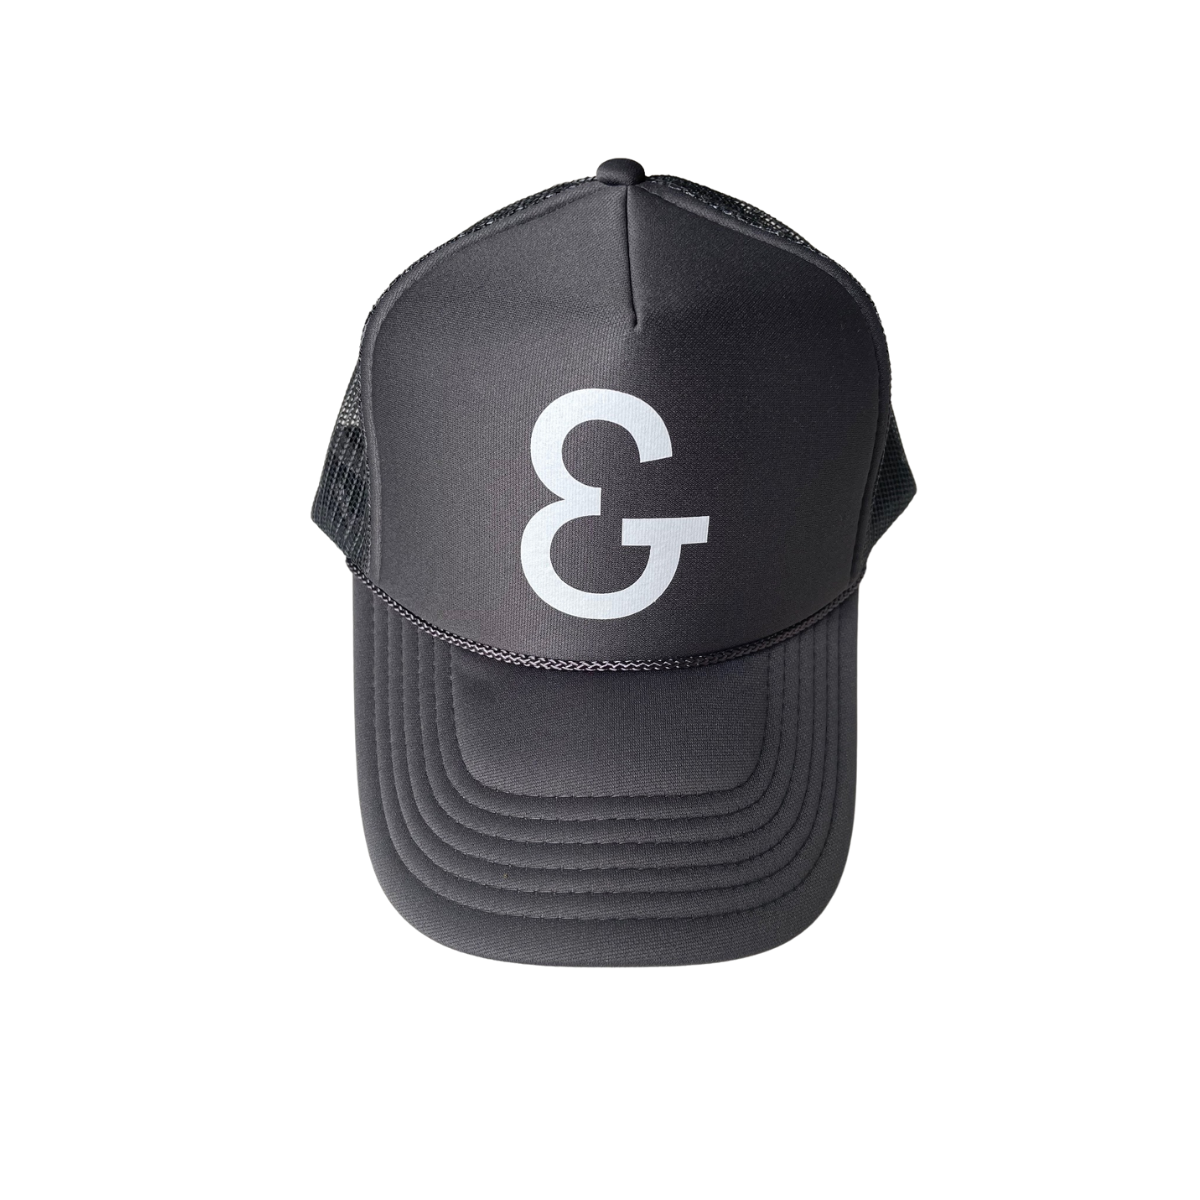 ERIN & CO Trucker Hat - Gray